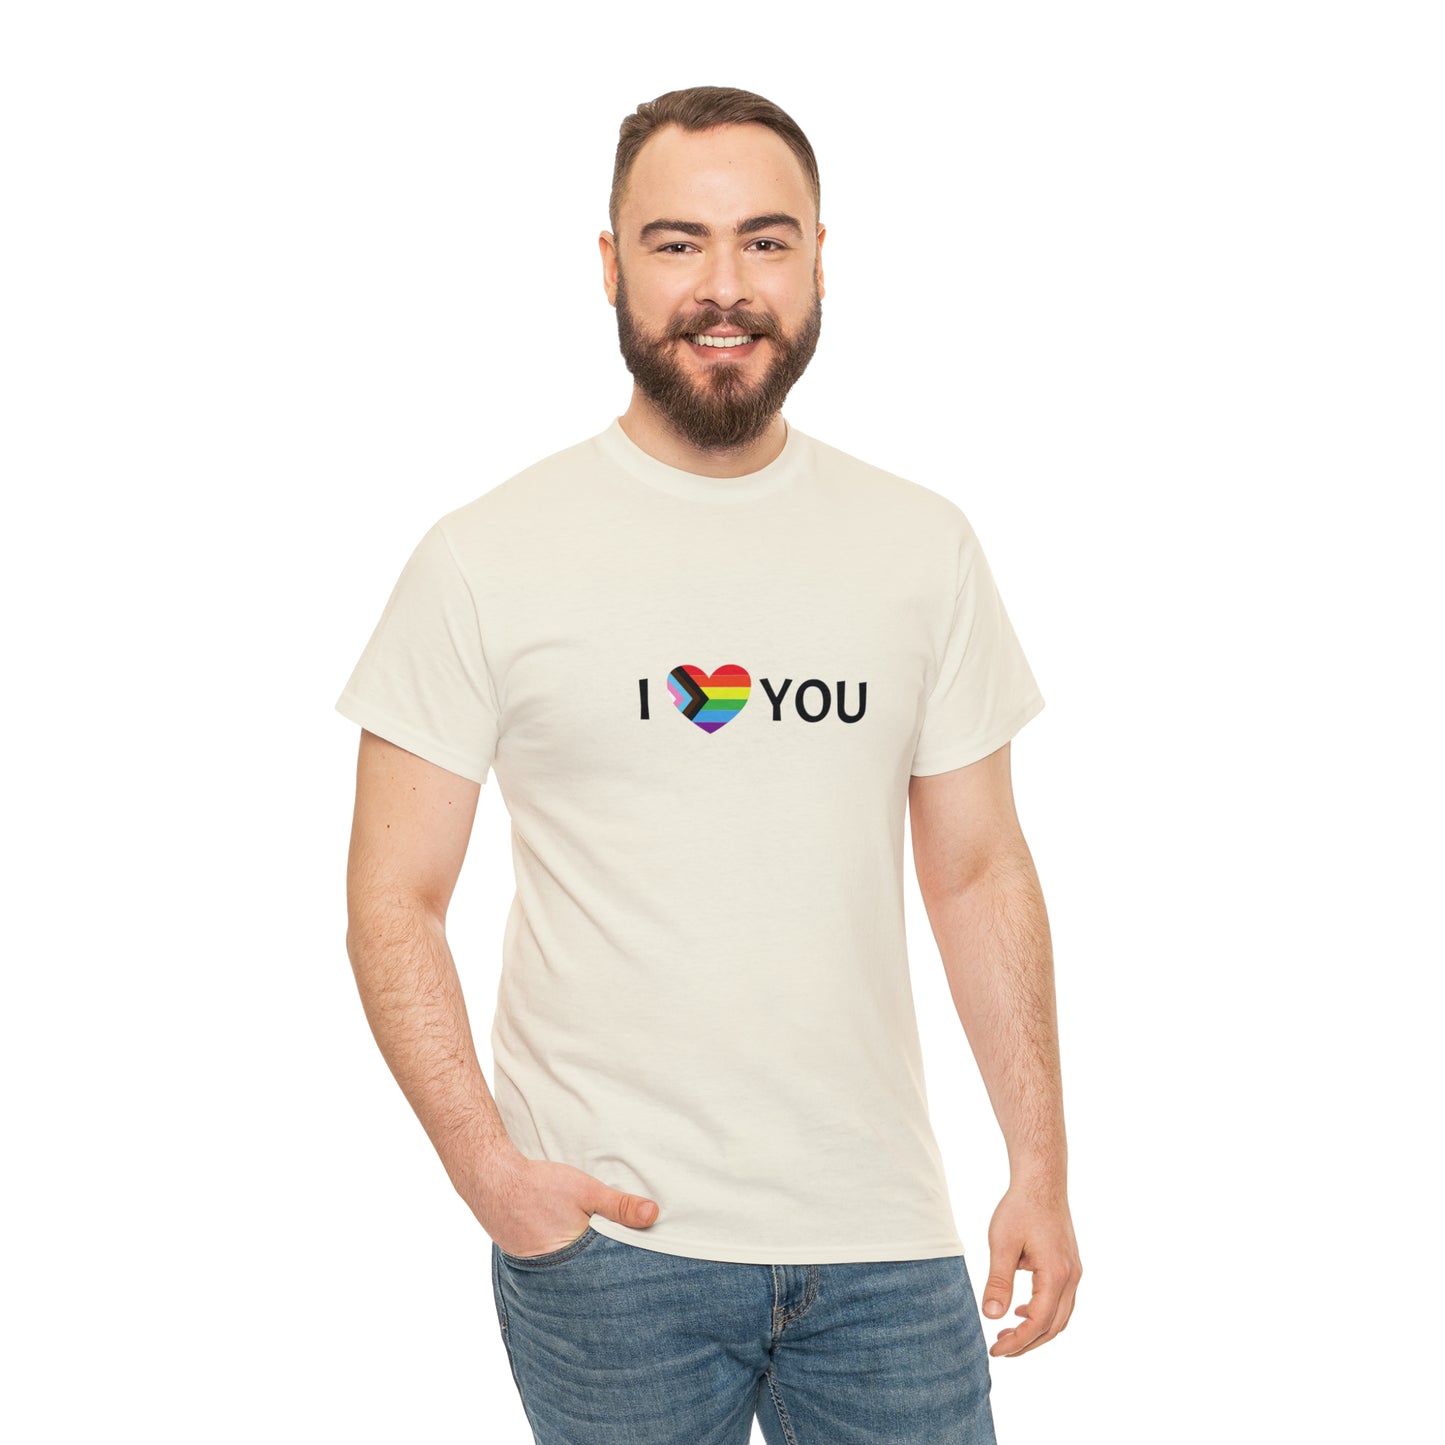 I <3 YOU Pride T-shirt